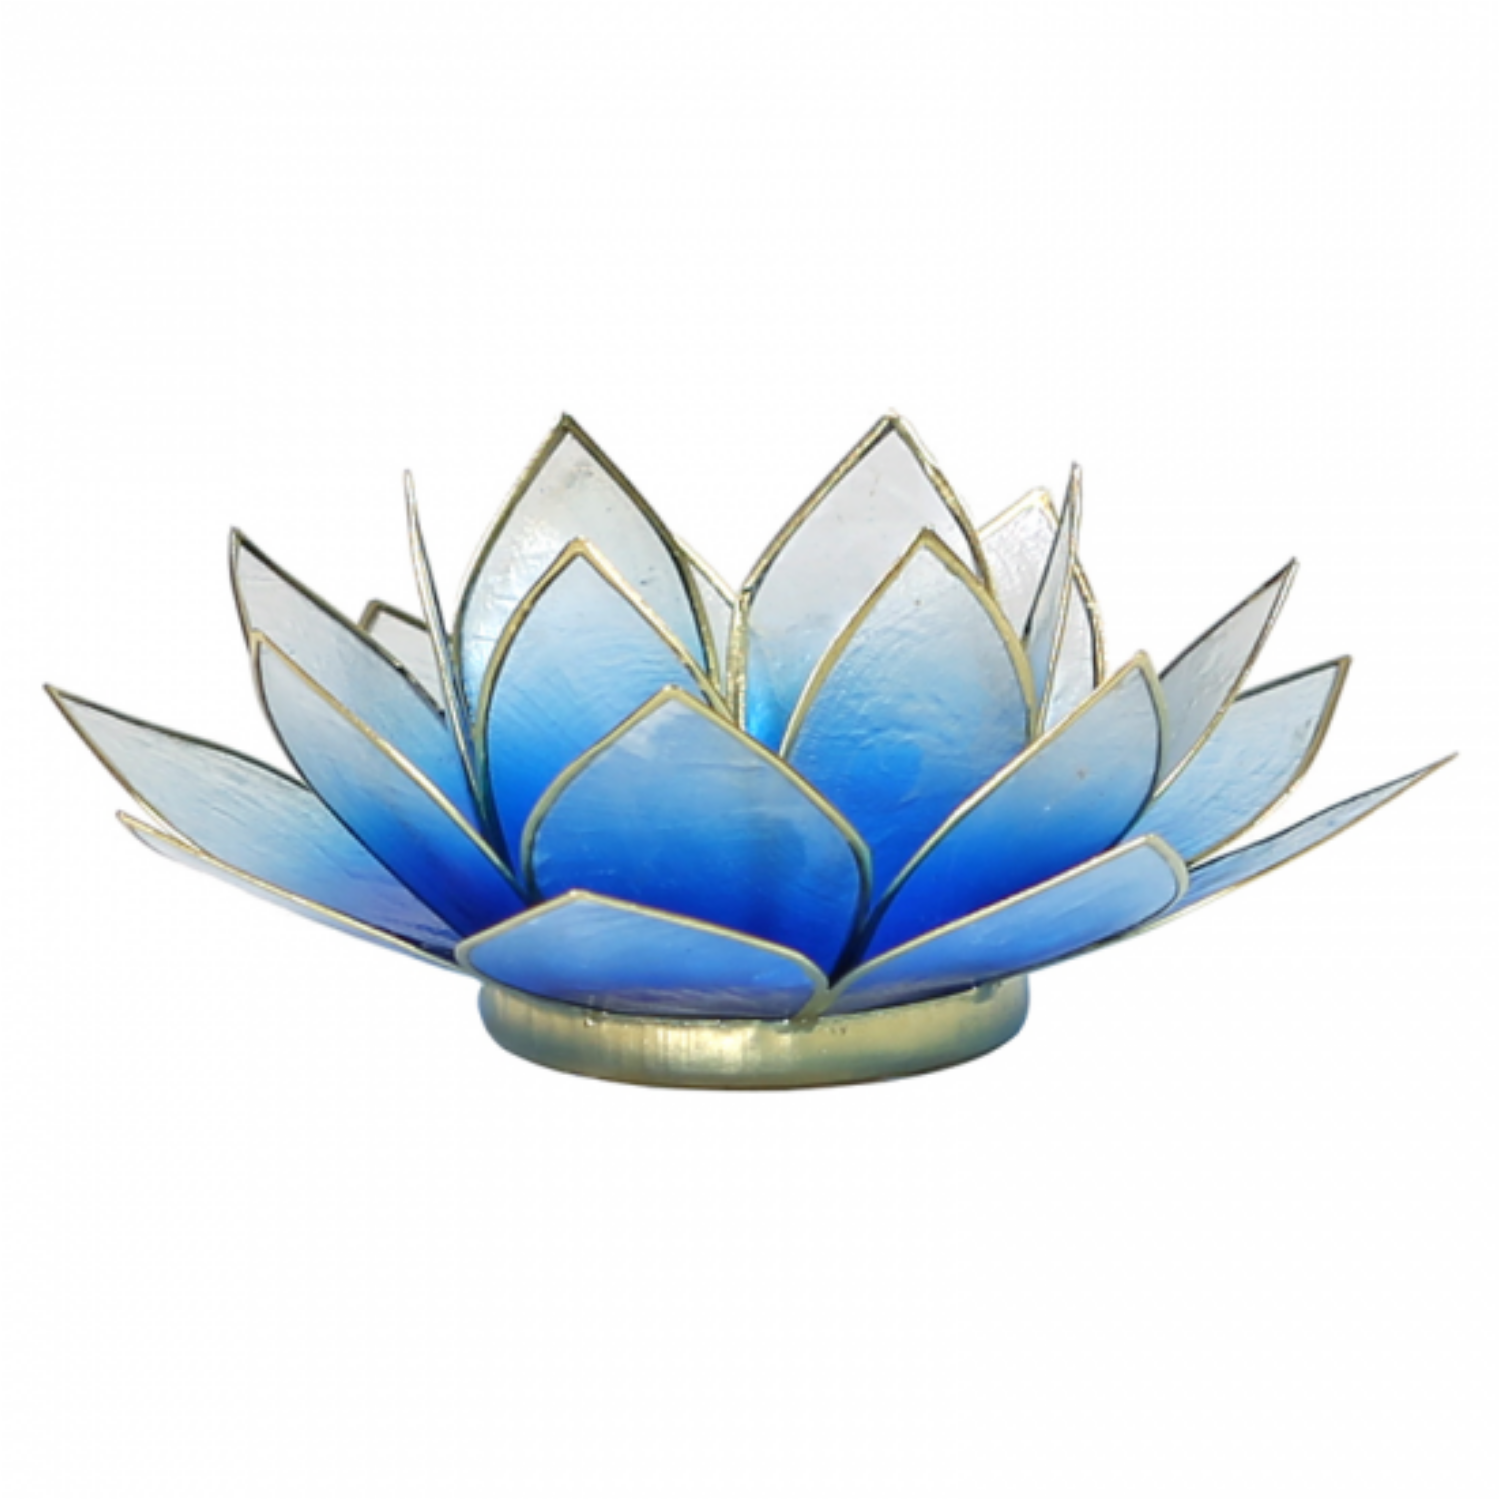 Mécsestartó Lótuszvirág 13,5 cm, kék-fehér, arany szegéllyel